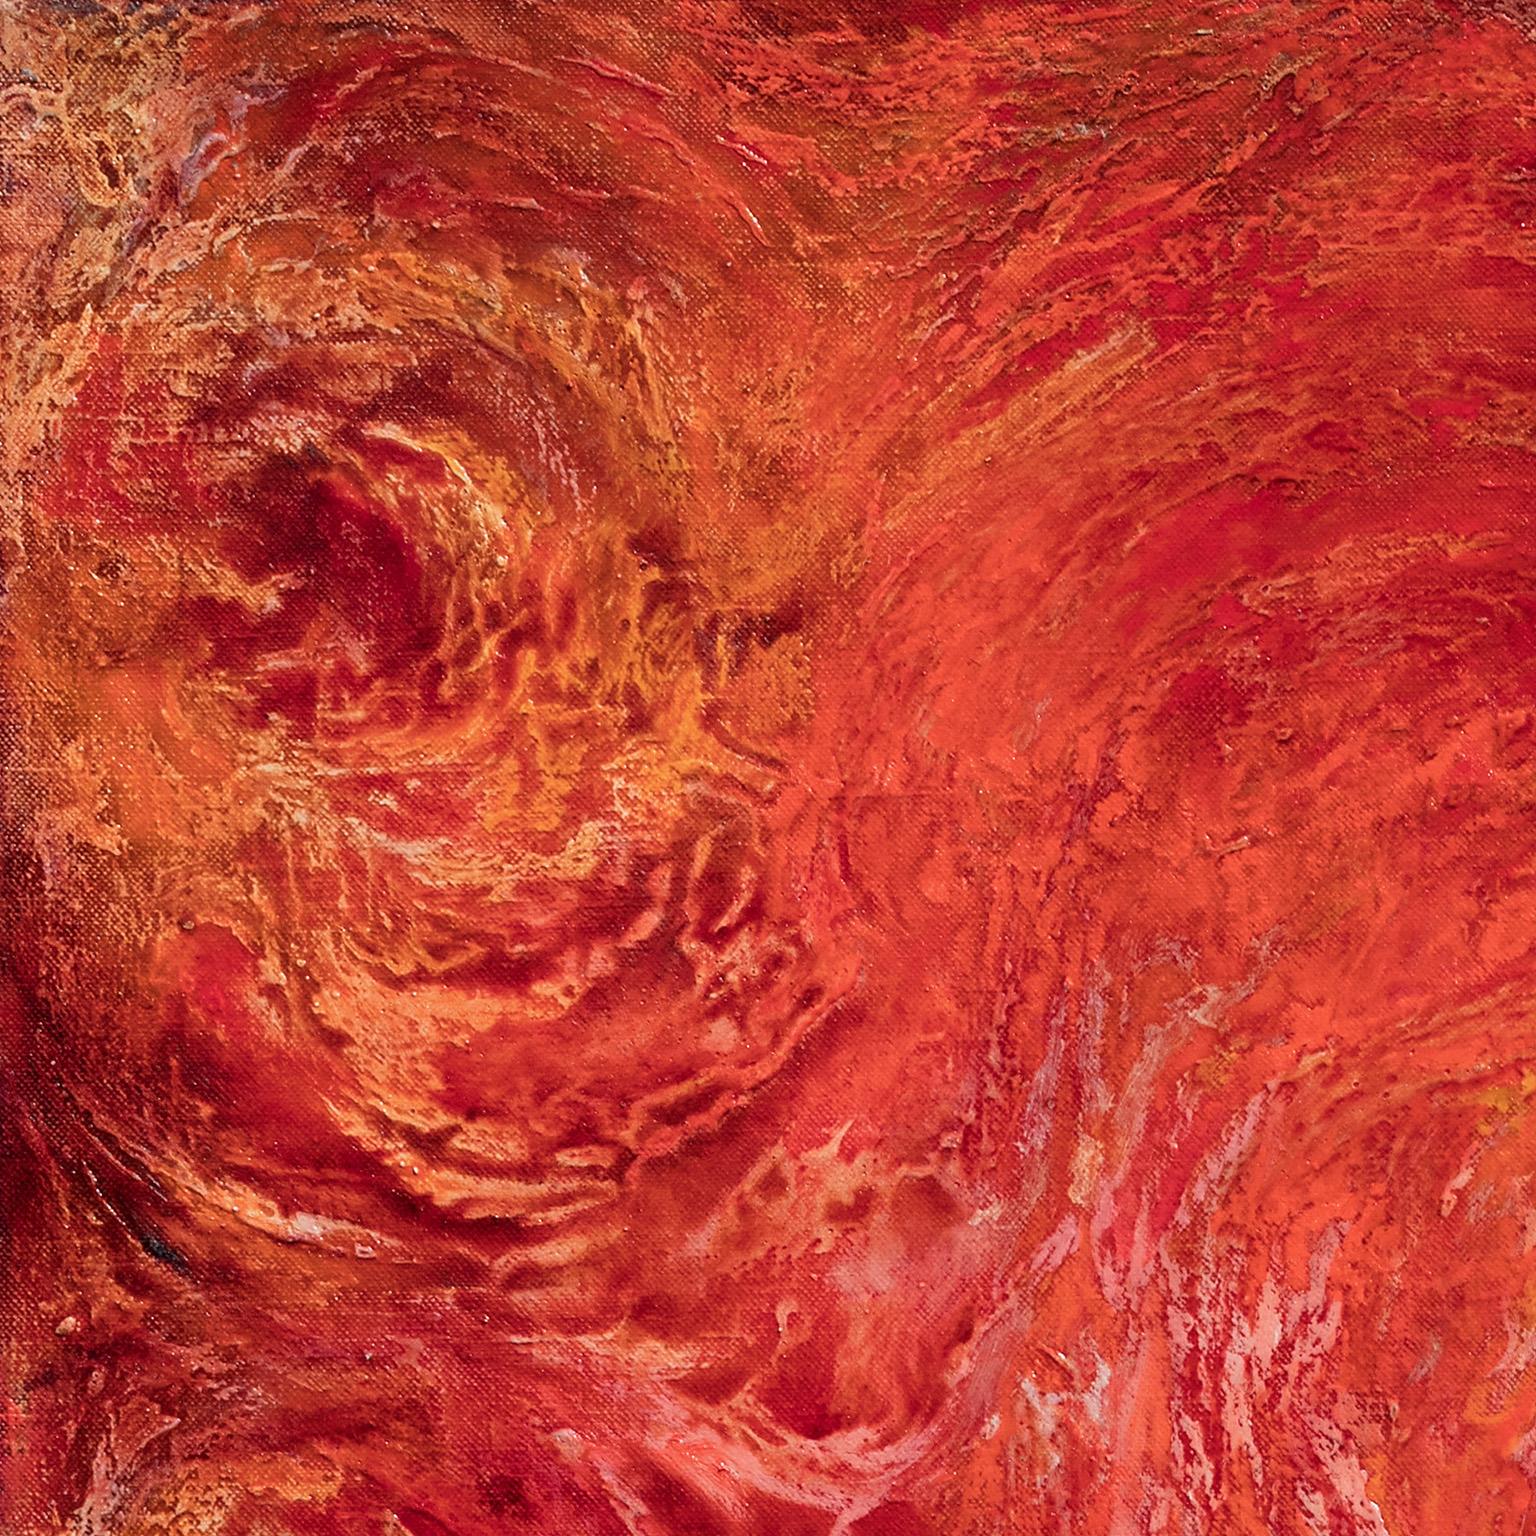 Summer Swirls de Ruggero Vanni est une peinture à l'huile abstraite et gestuelle de 64 x 52 pouces. Les couleurs principales sont le rouge et l'orange. L'artiste alterne de grands coups de pinceau très gestuels et instinctifs, avec des interventions